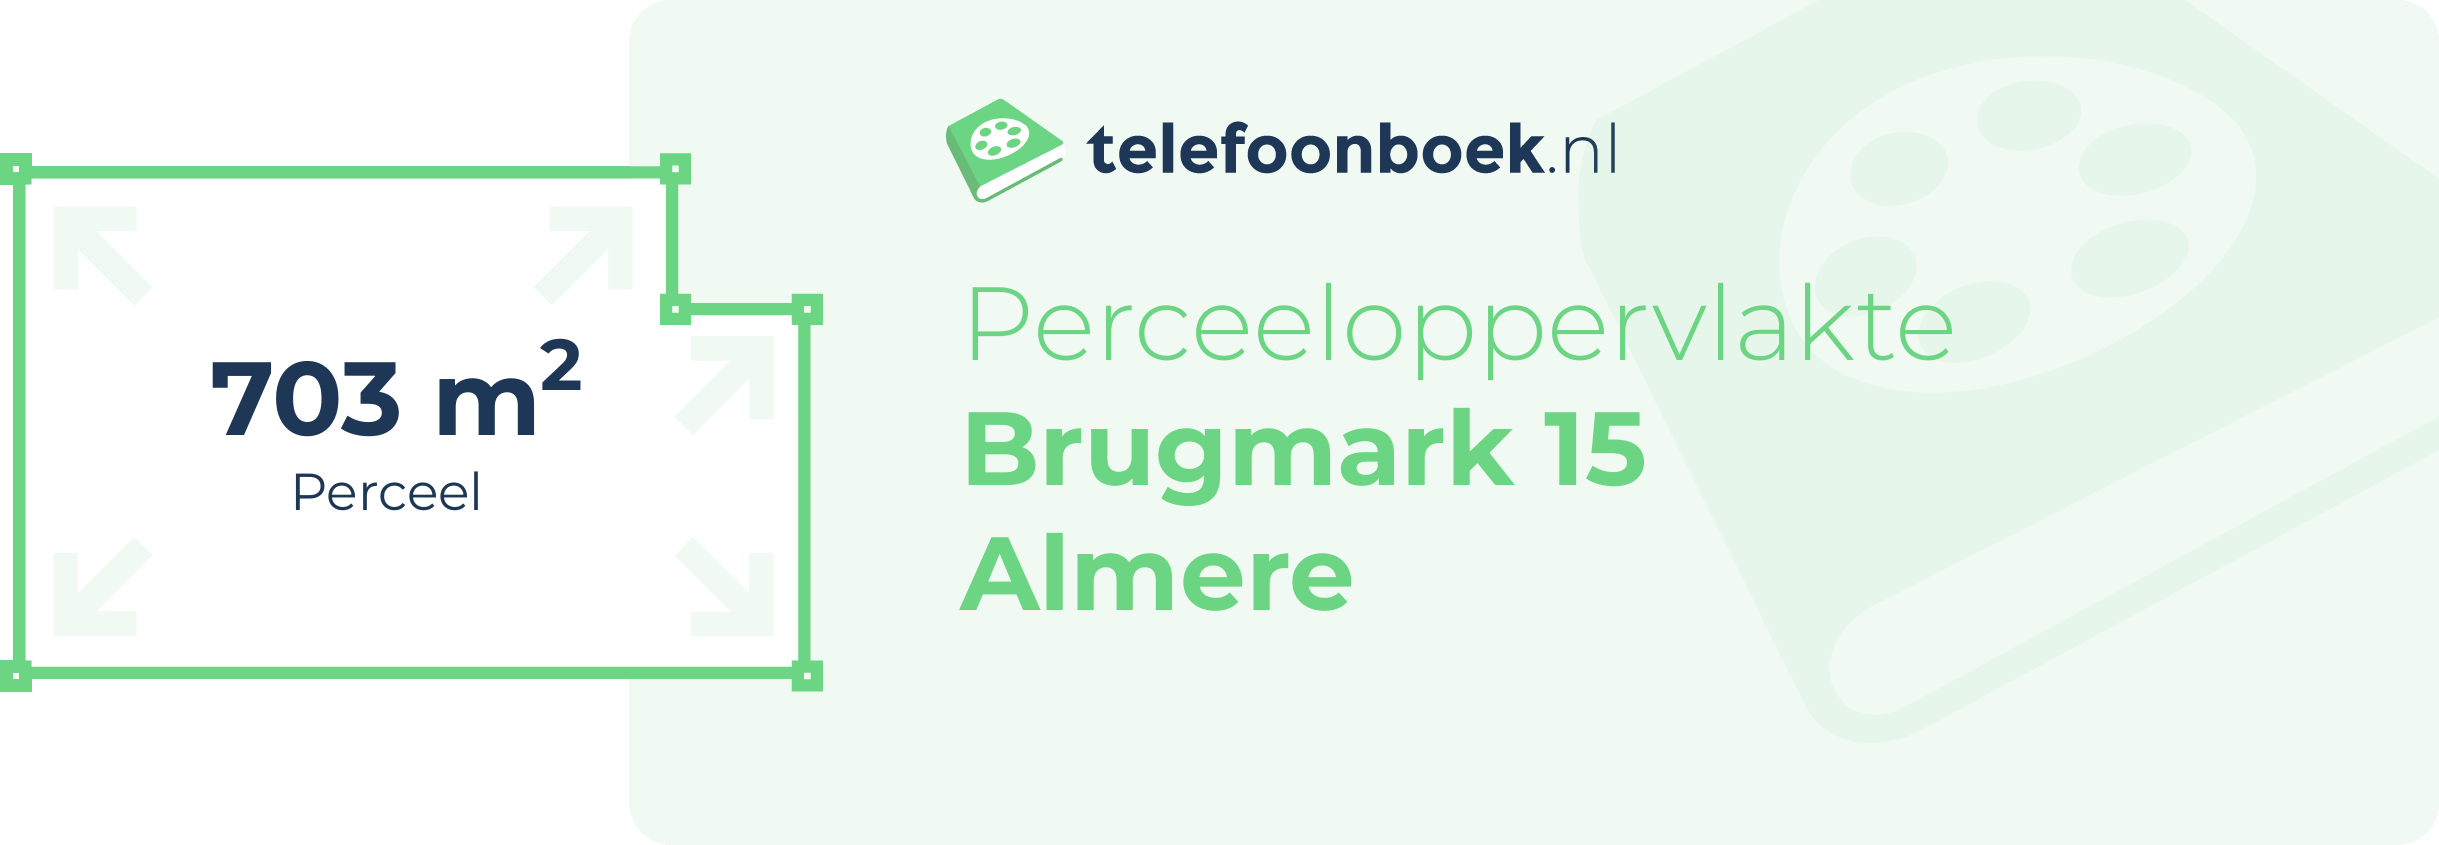 Perceeloppervlakte Brugmark 15 Almere